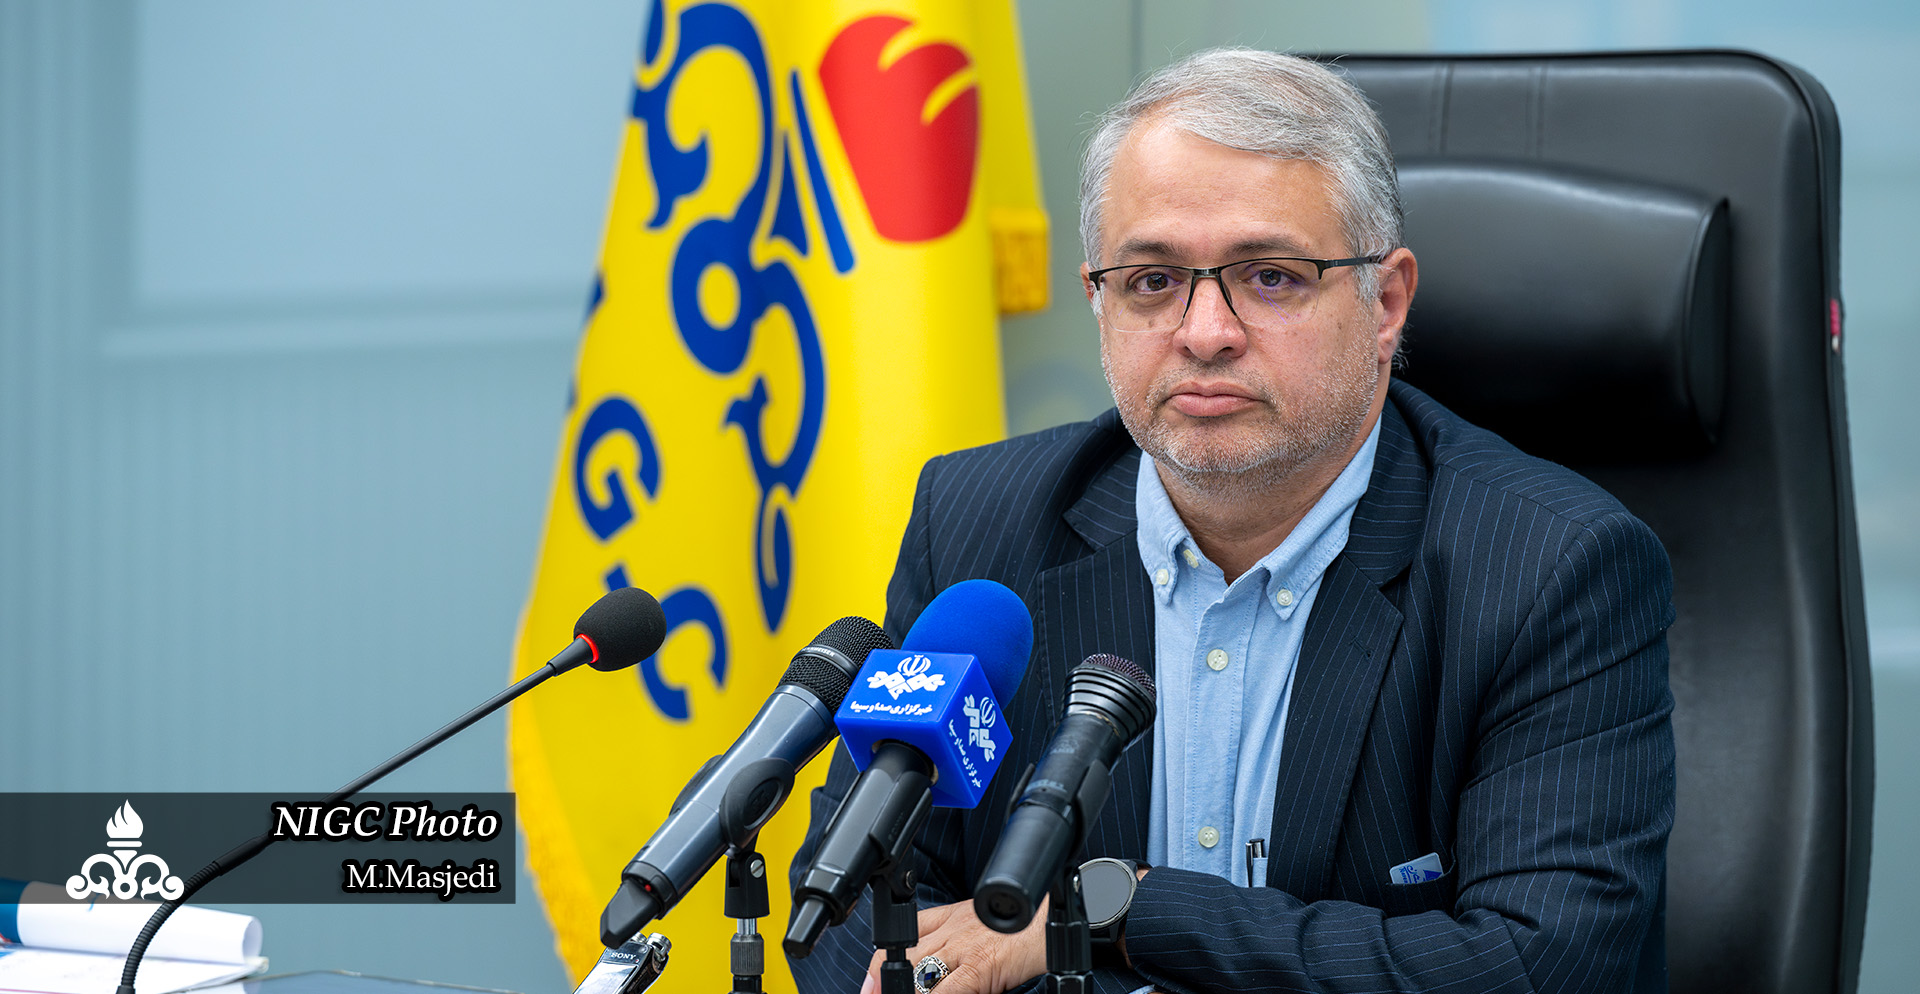 مدیر دیسپچینگ شرکت ملی گاز ایران، در پی وقوع انفجار خط لوله سراسری گاز گفت: مشکلات پیش آمده برای خط لوله سراسری در حال مدیریت است